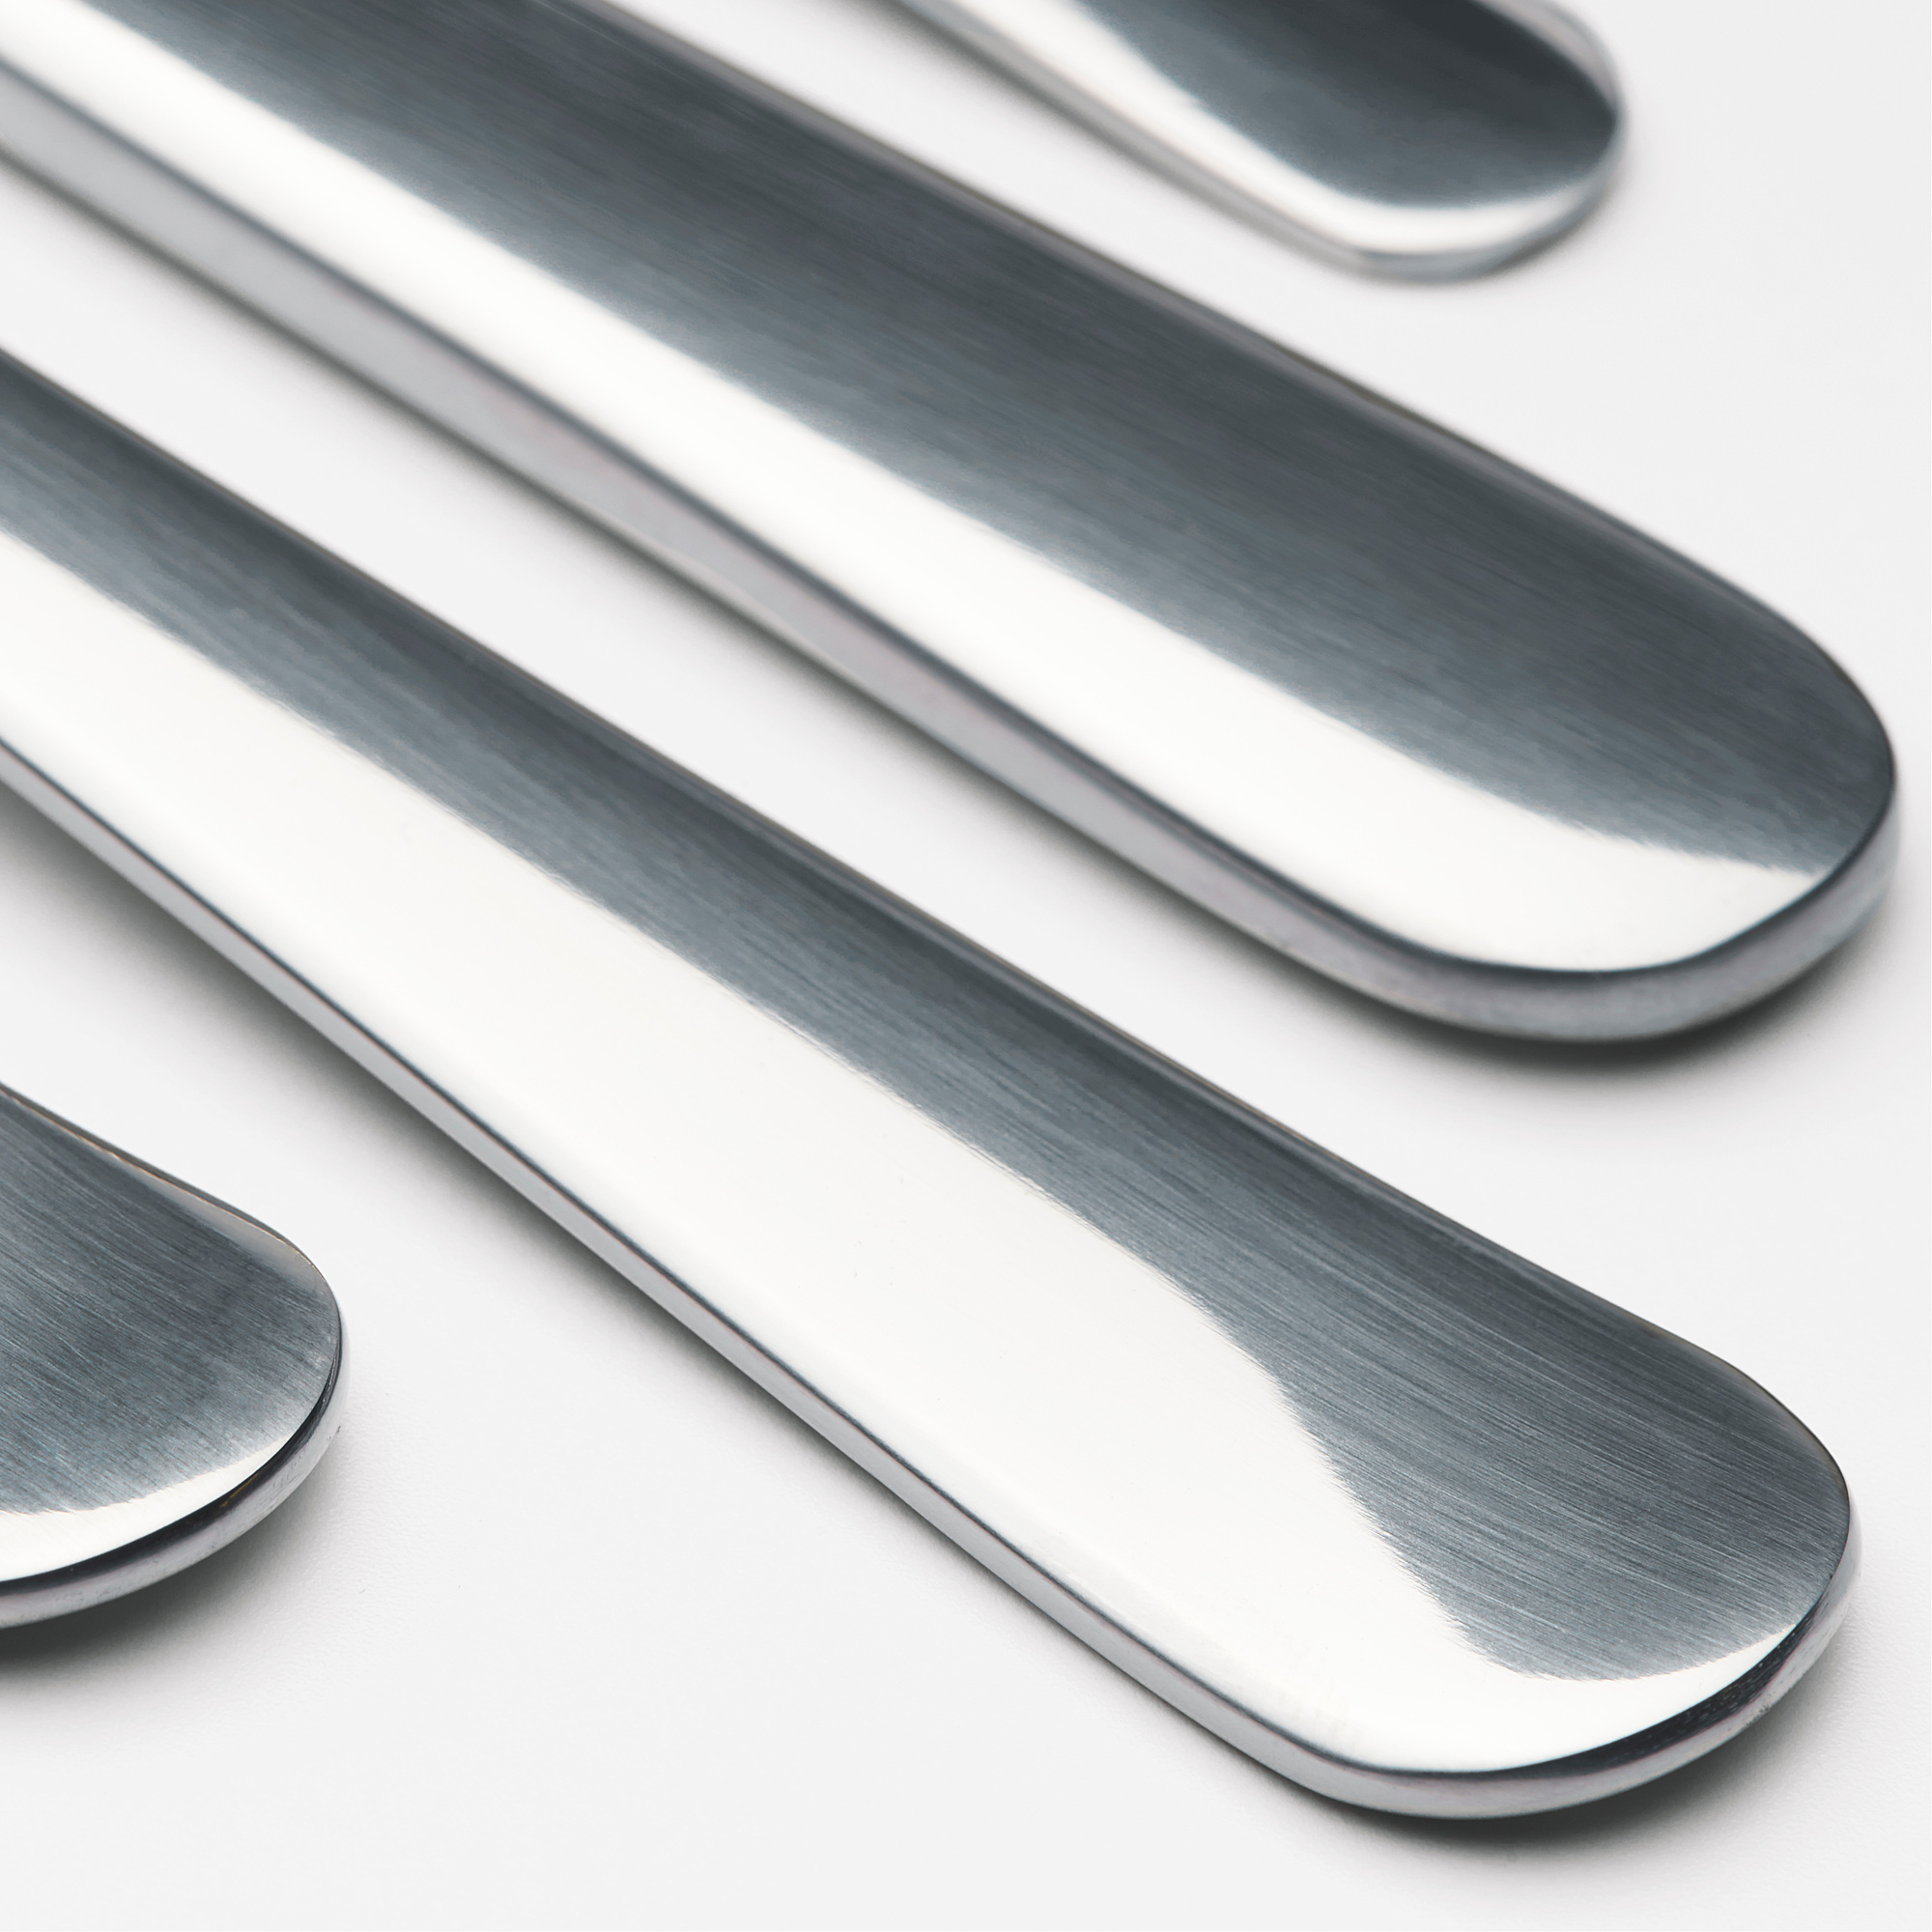 DRAGON 24-piece cutlery set